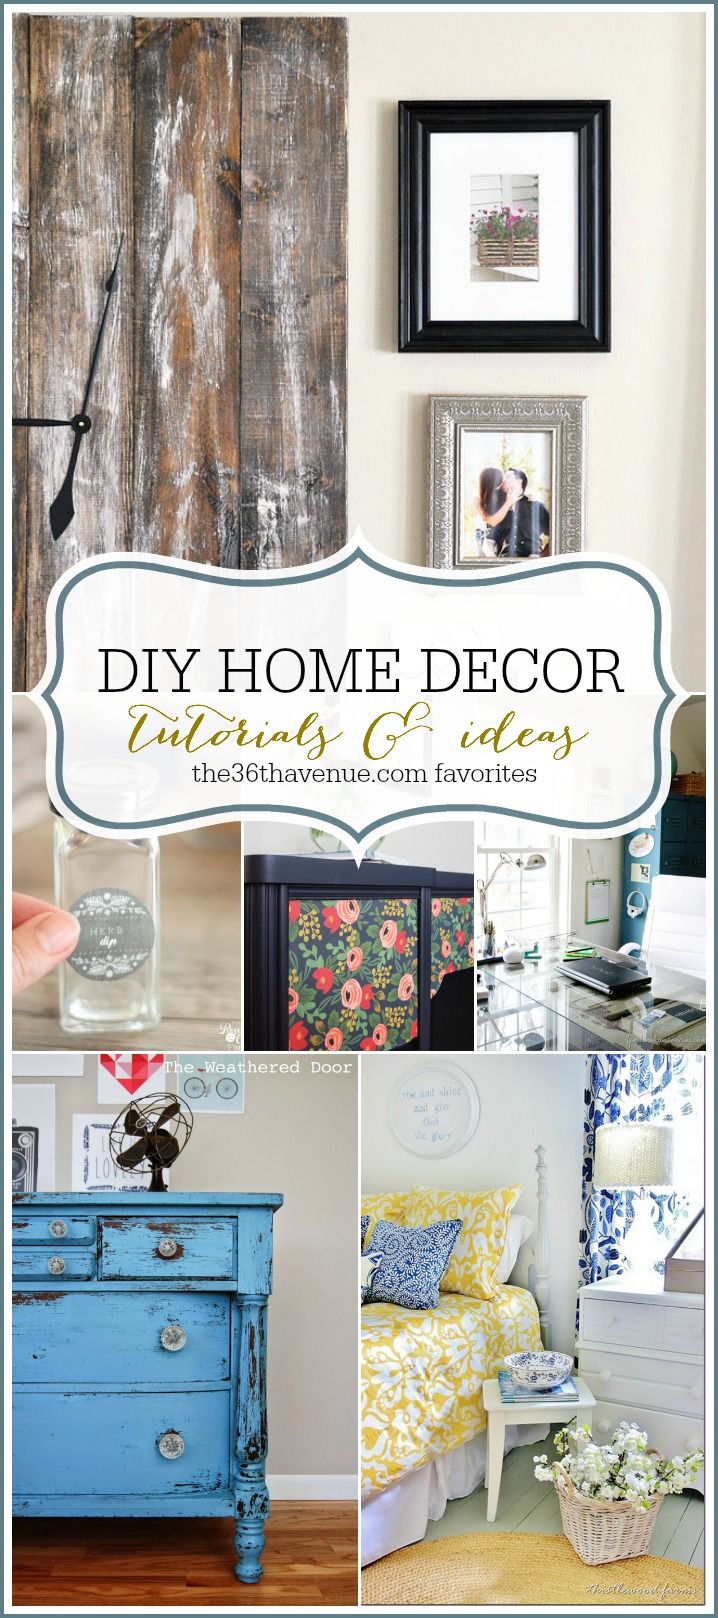 DIY home decor. [ PropFunds.com ] #home #funds #saving